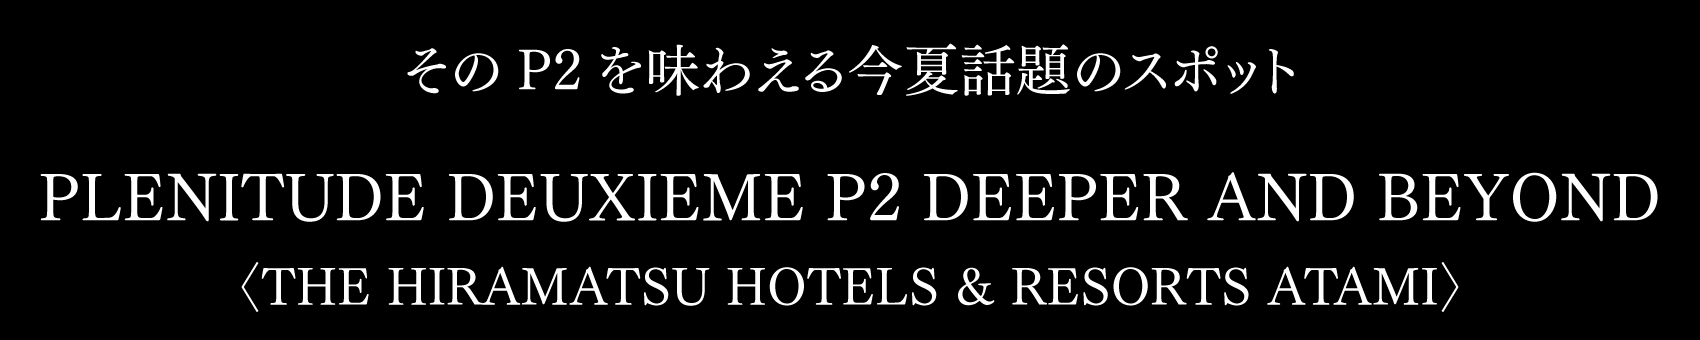 そのP2を味わえる今夏話題のスポット PLENITUDE DEUXIEME P2 DEEPER AND BEYOND 〈THE HIRAMATSU HOTELS & RESORTS ATAMI〉